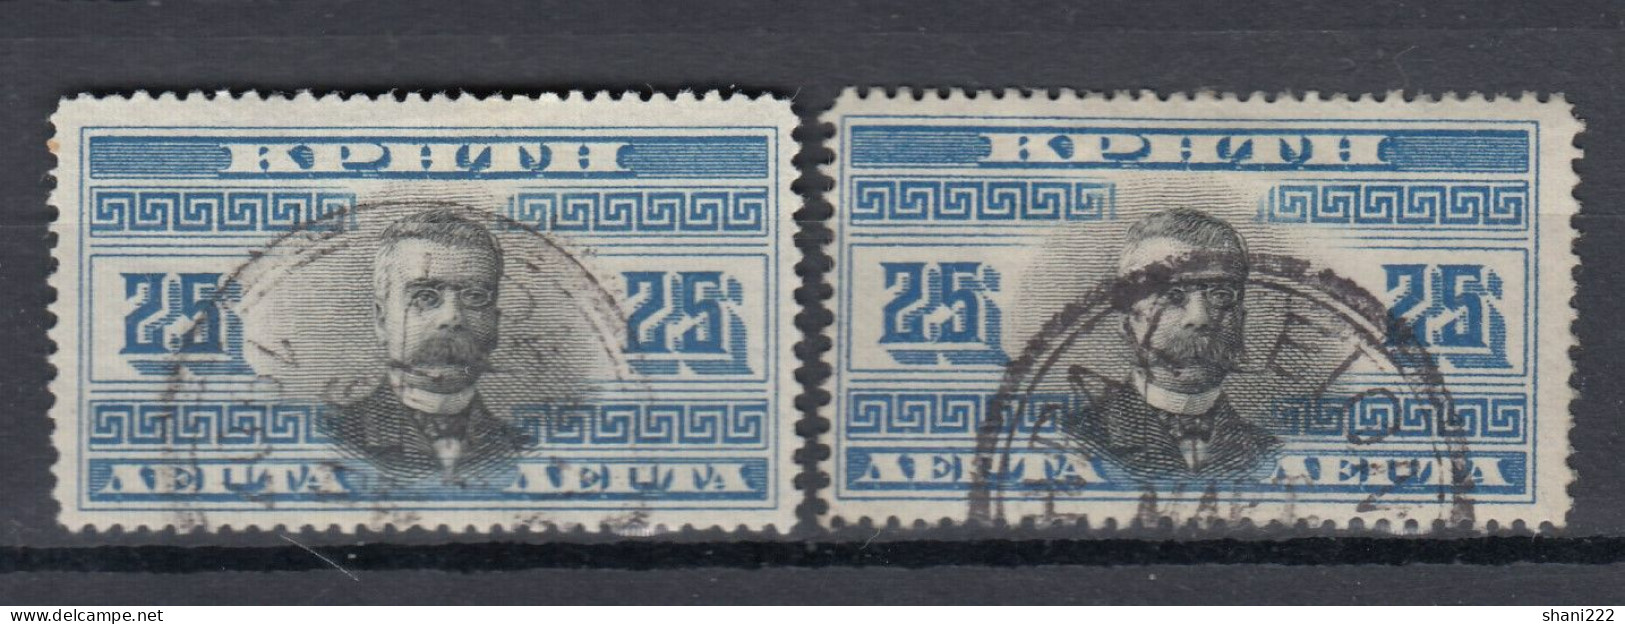 Greece 1907 - Crete -  25 L, 2 Items (e-641) - Crete